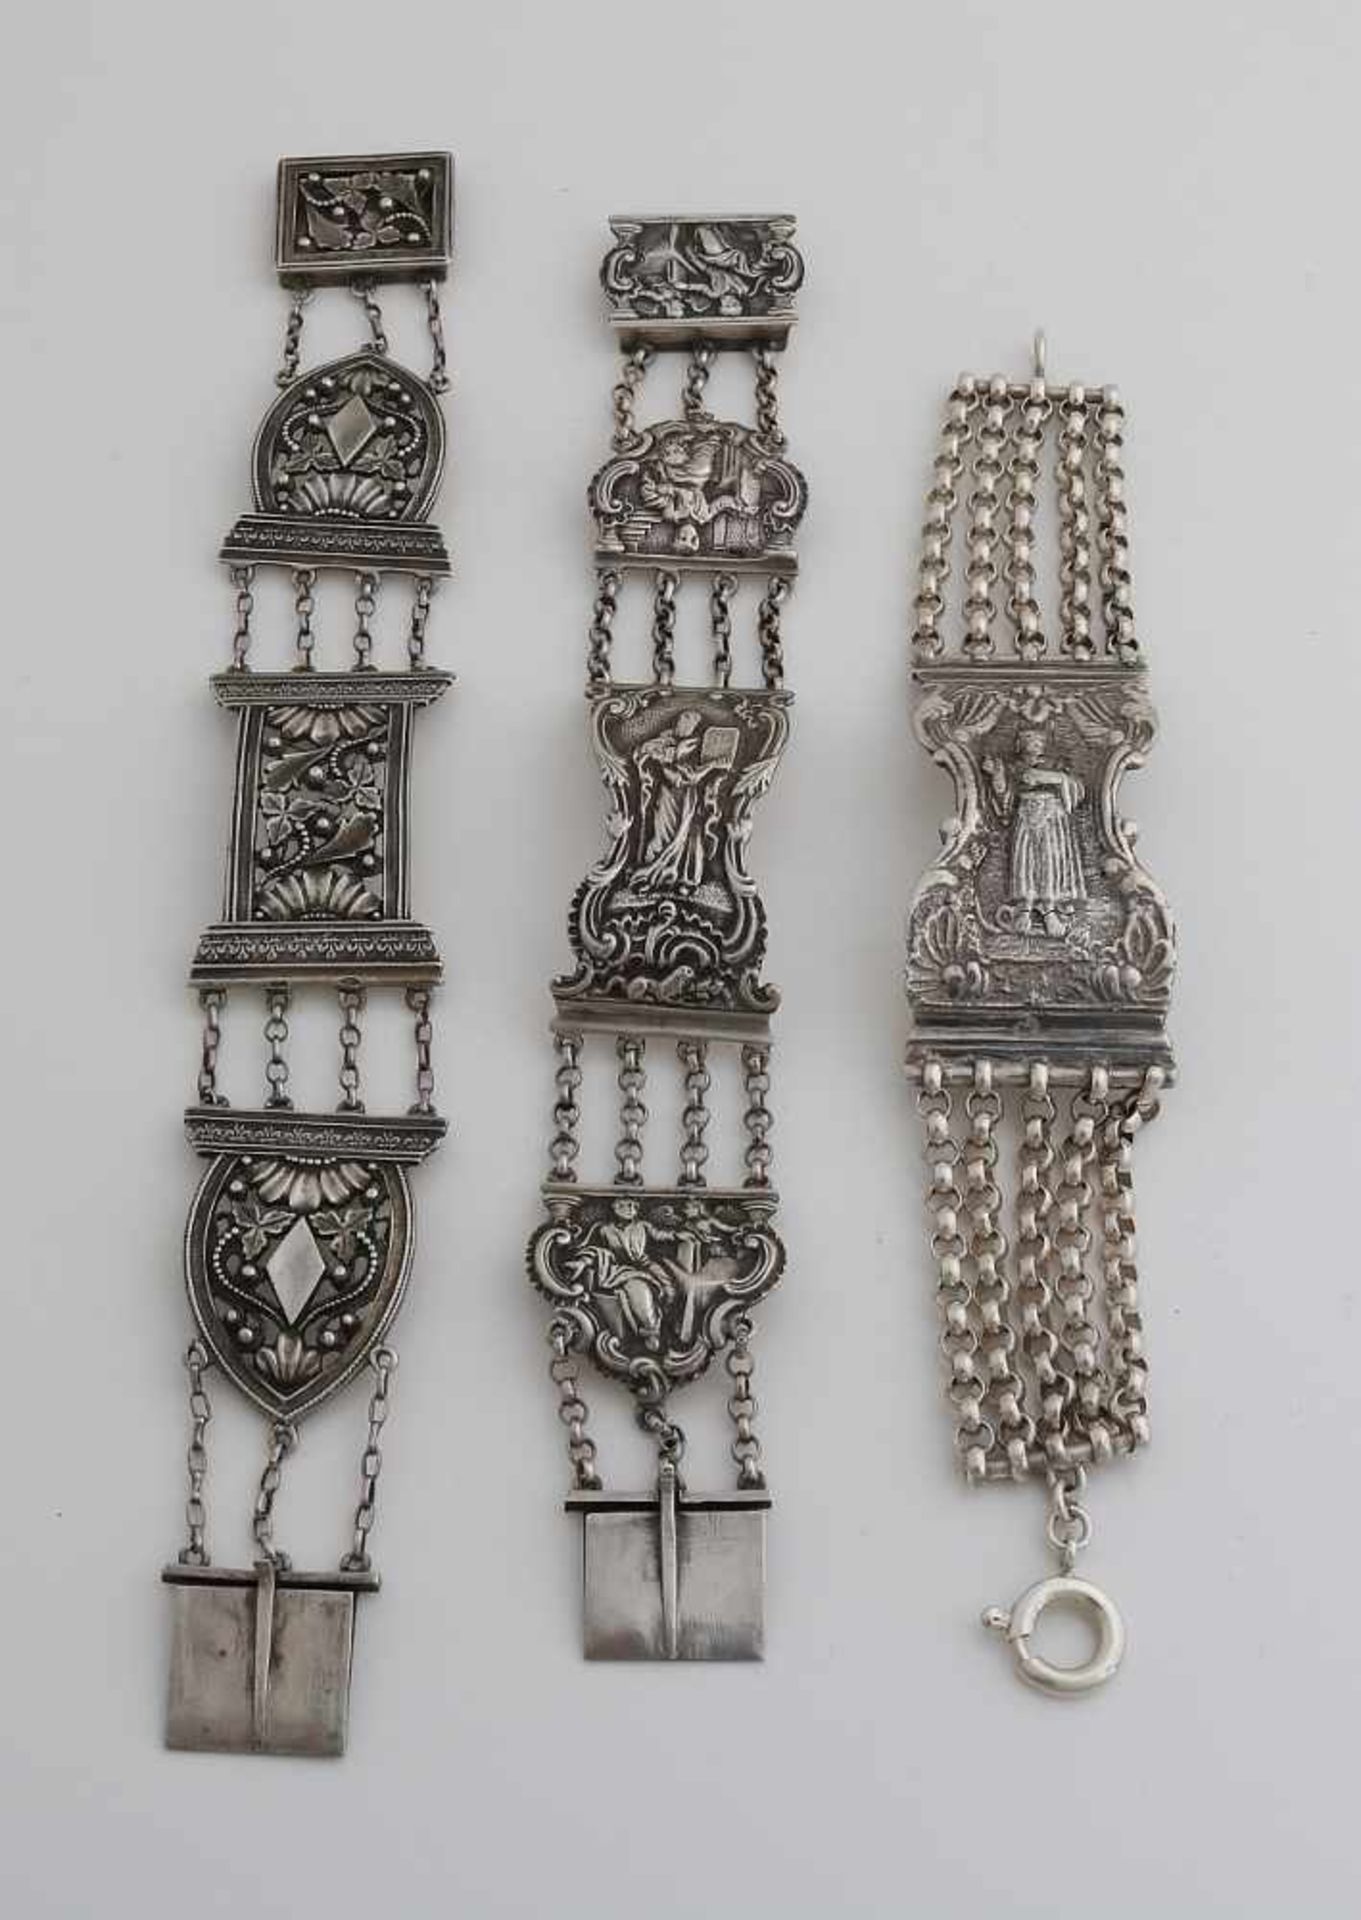 Drei silberne Armbänder, 833/000, aus Bibelverschlüssen, mit Figuren und Blumendekor. Insgesamt